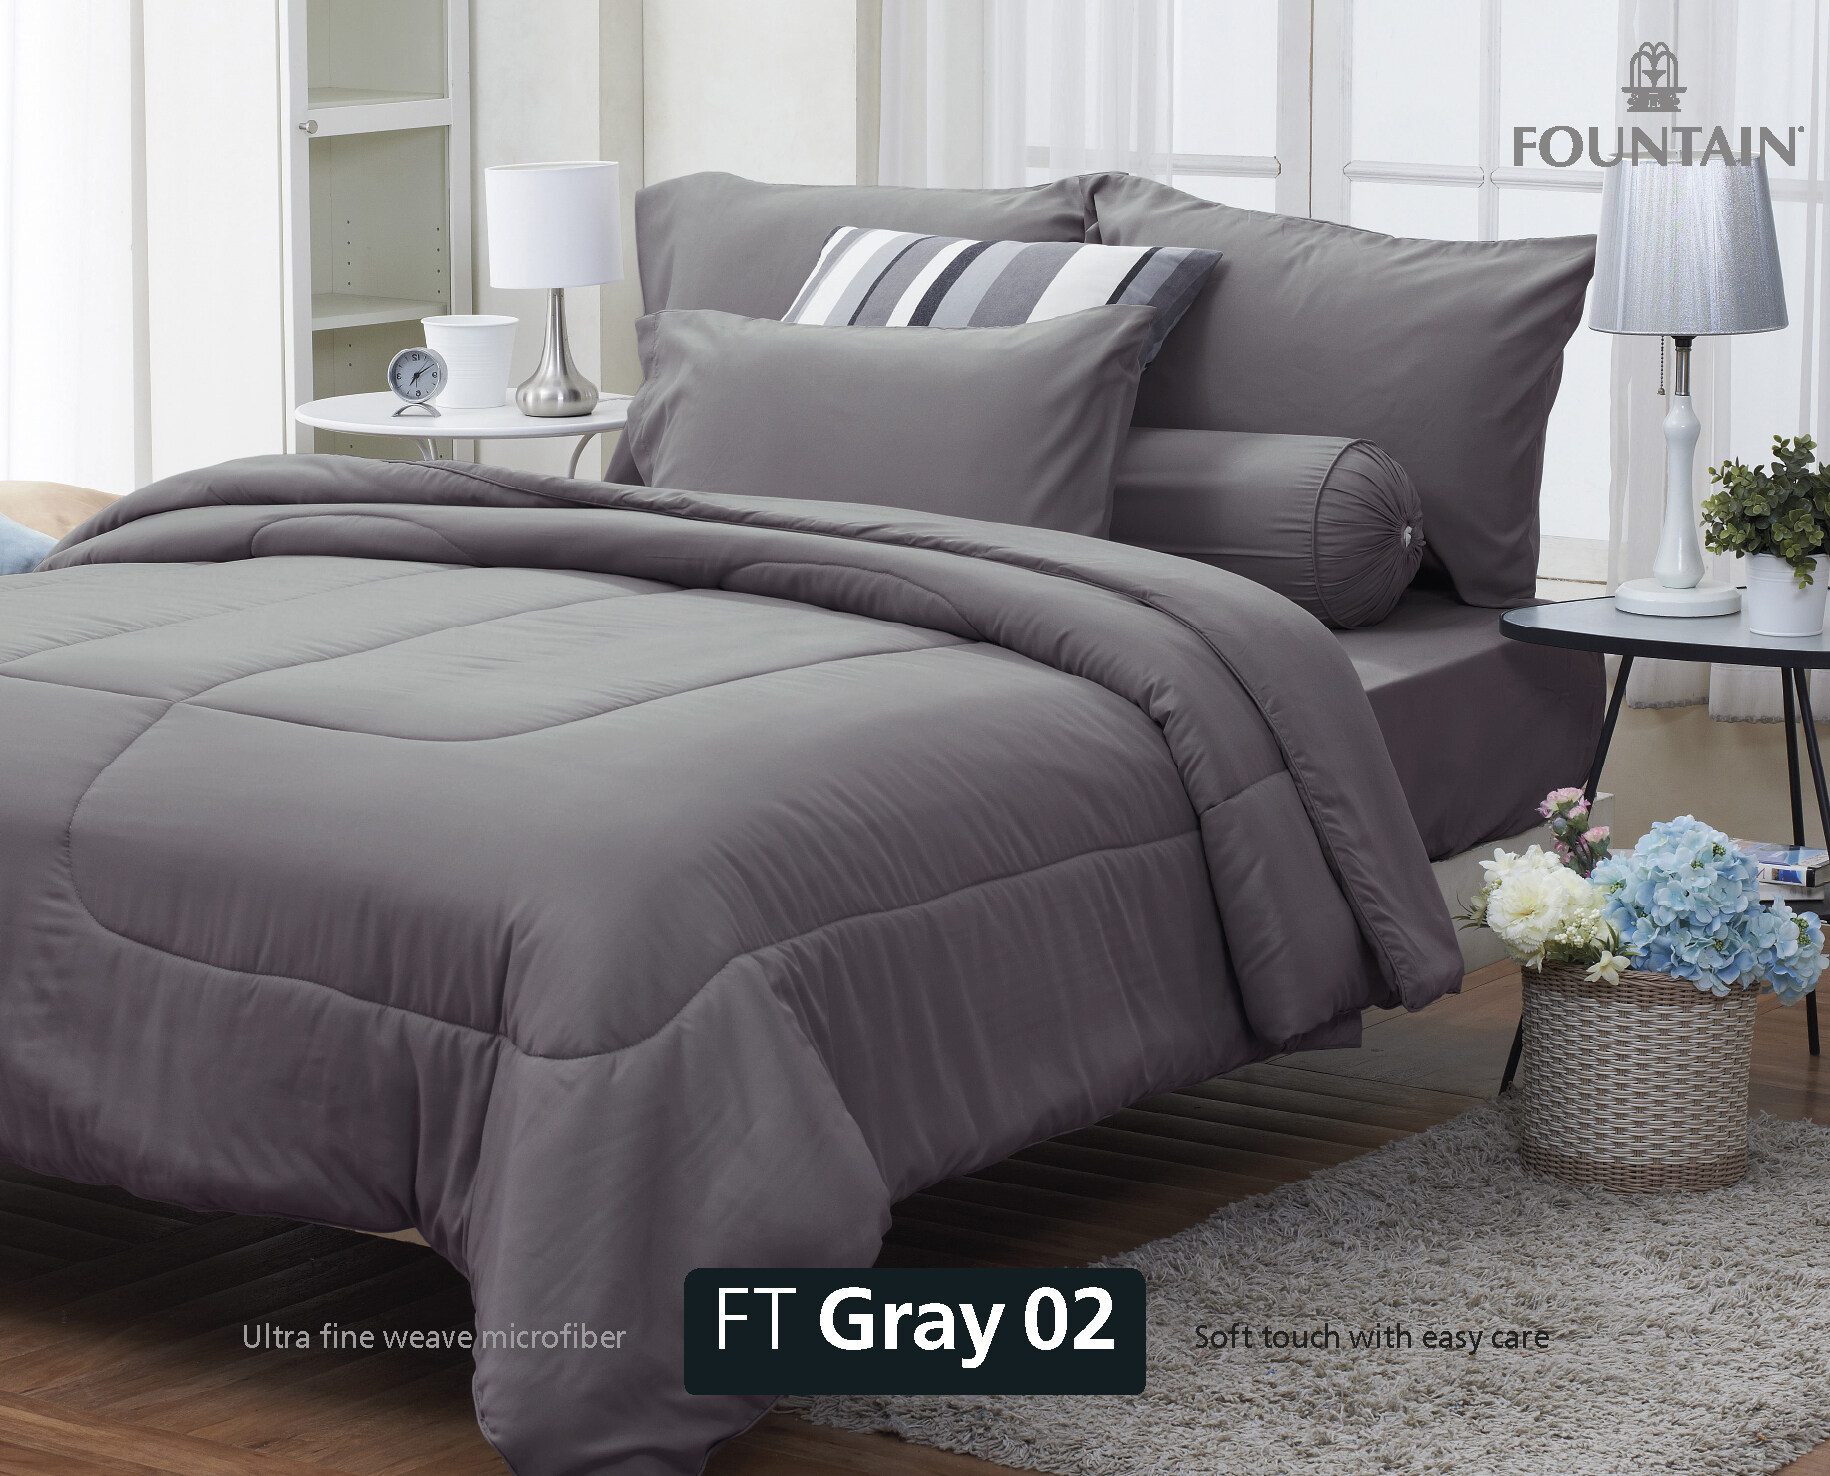 FOUNTAIN ผ้านวม + ชุดผ้าปู ผ้าปู ที่นอน แท้ 100% FTC สีพื้น เขียว Green Gray เทา ขนาด 3.5 5 6ฟุต ชุดเครื่องนอน ผ้านวม ผ้าปูที่นอน wonderful bedding  สี → Grayขนาดสินค้า 6 ฟุต